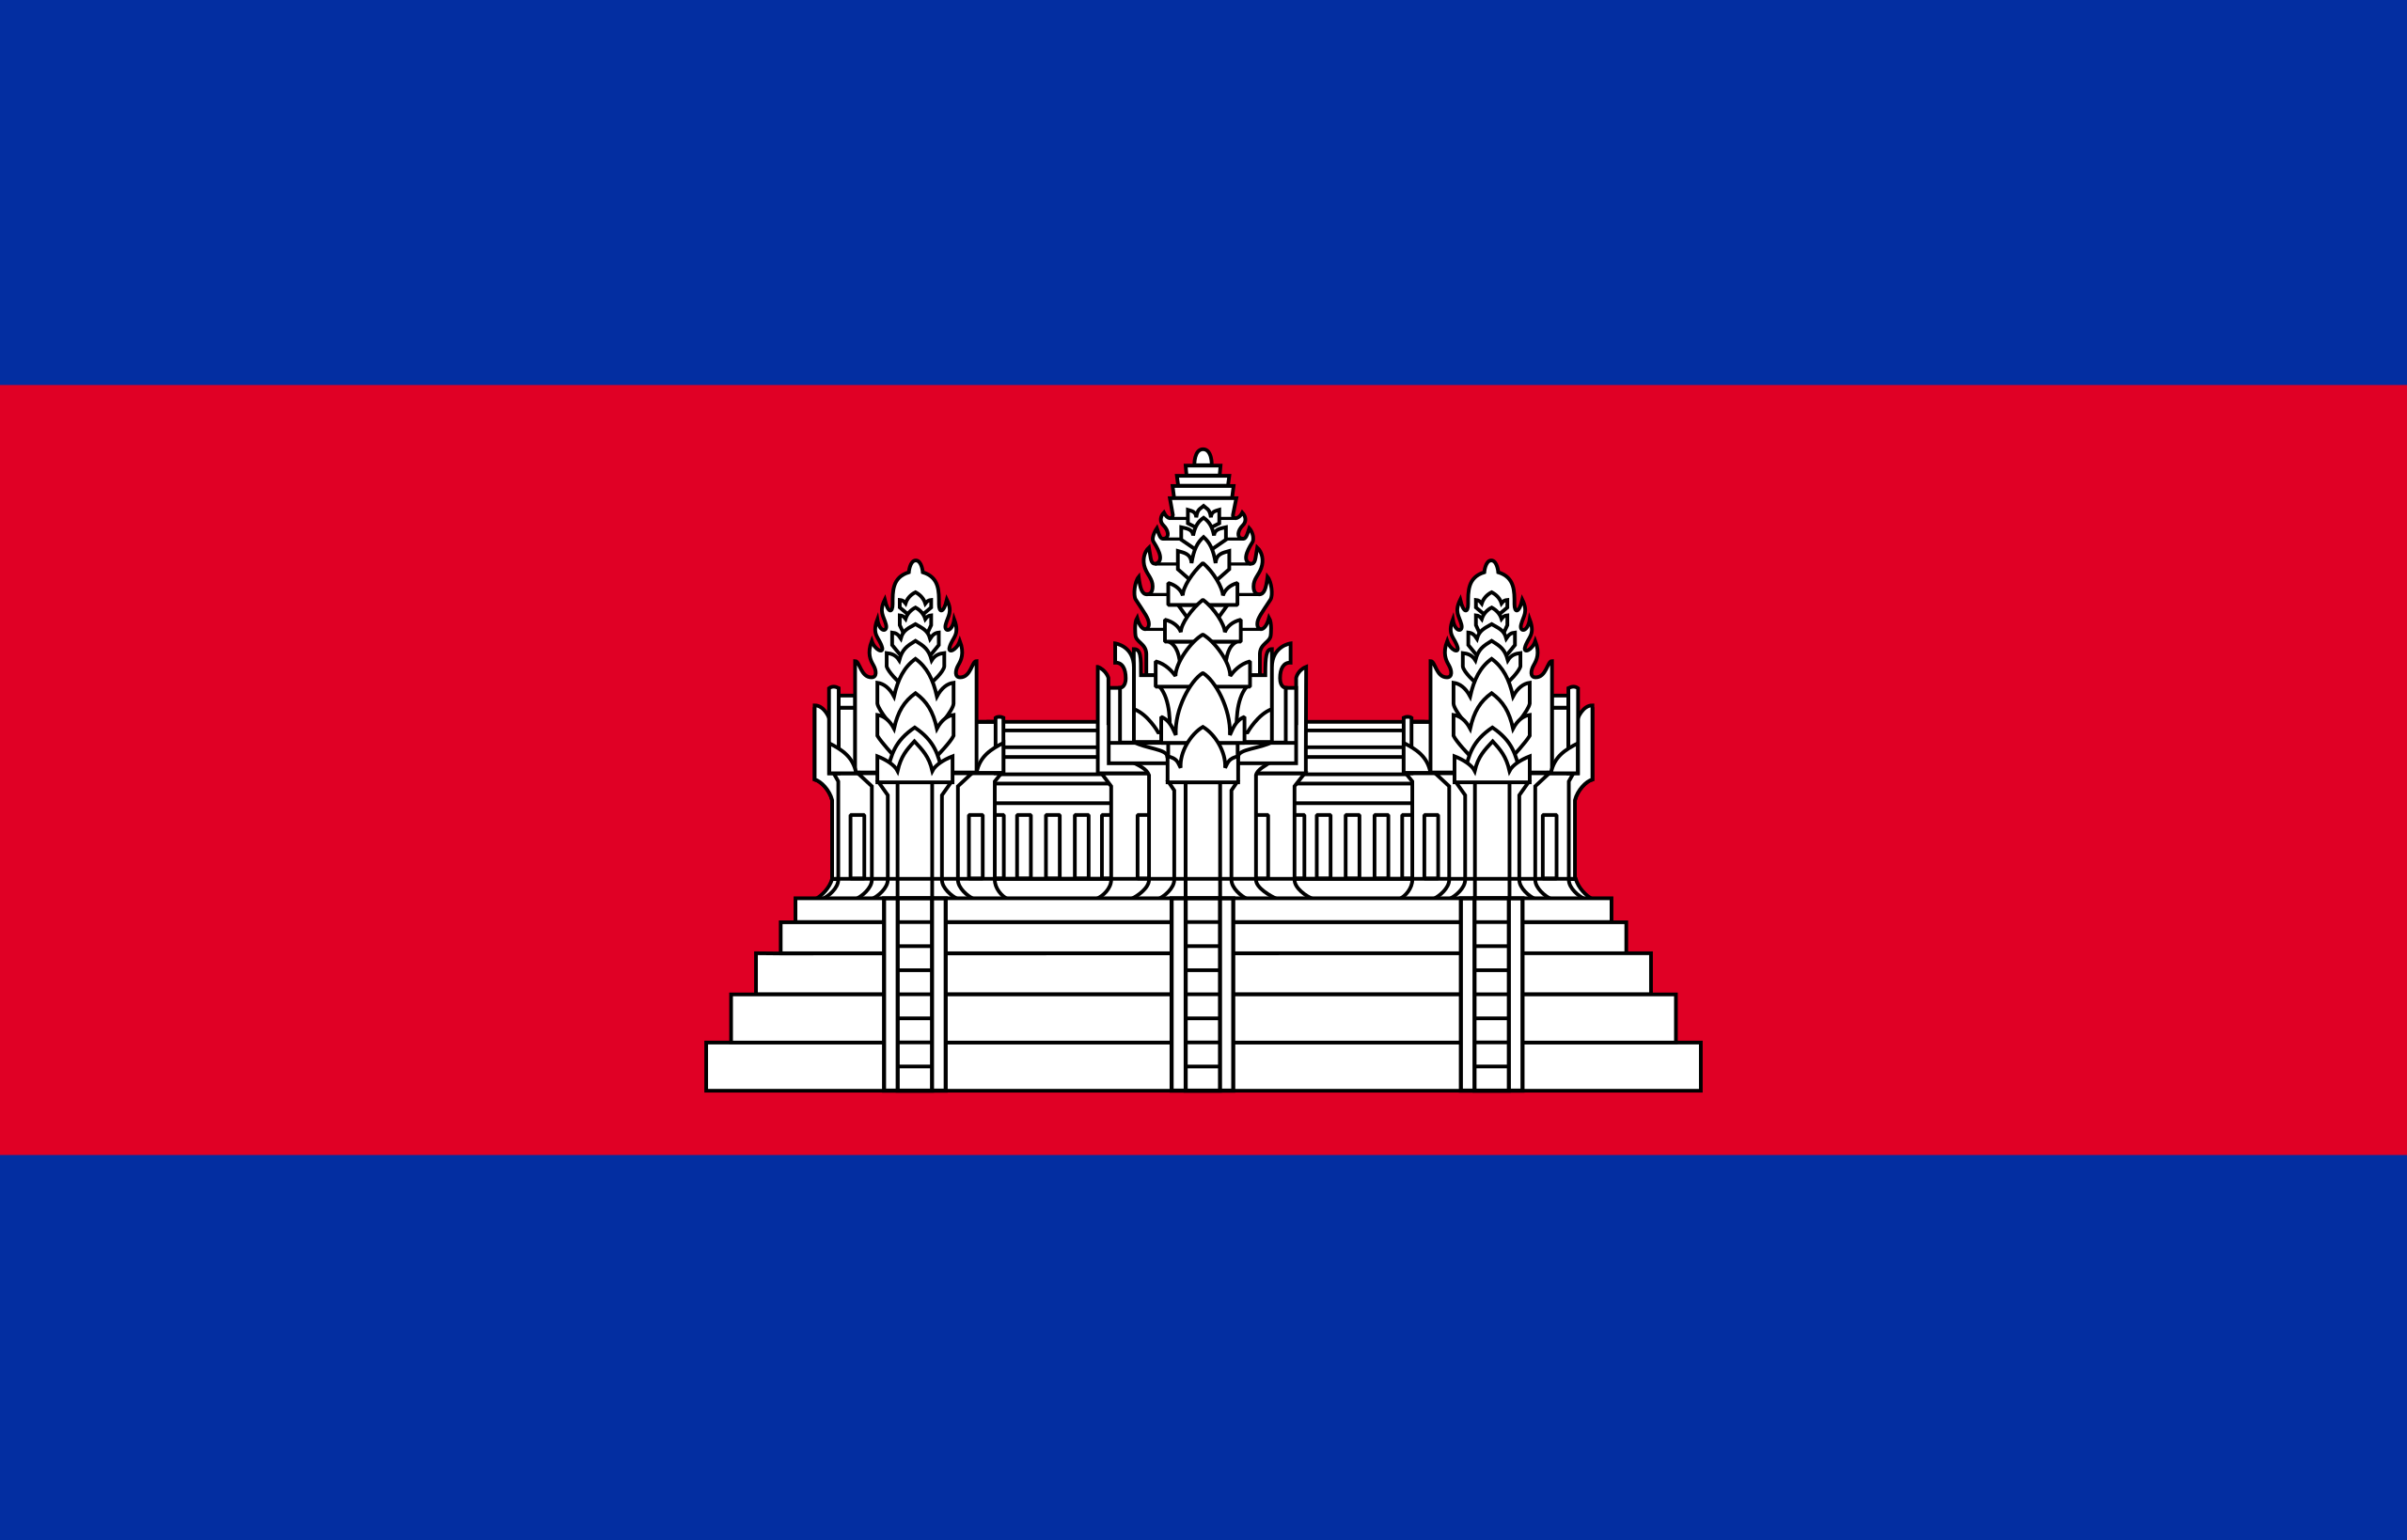 ธงชาติกัมพูชา